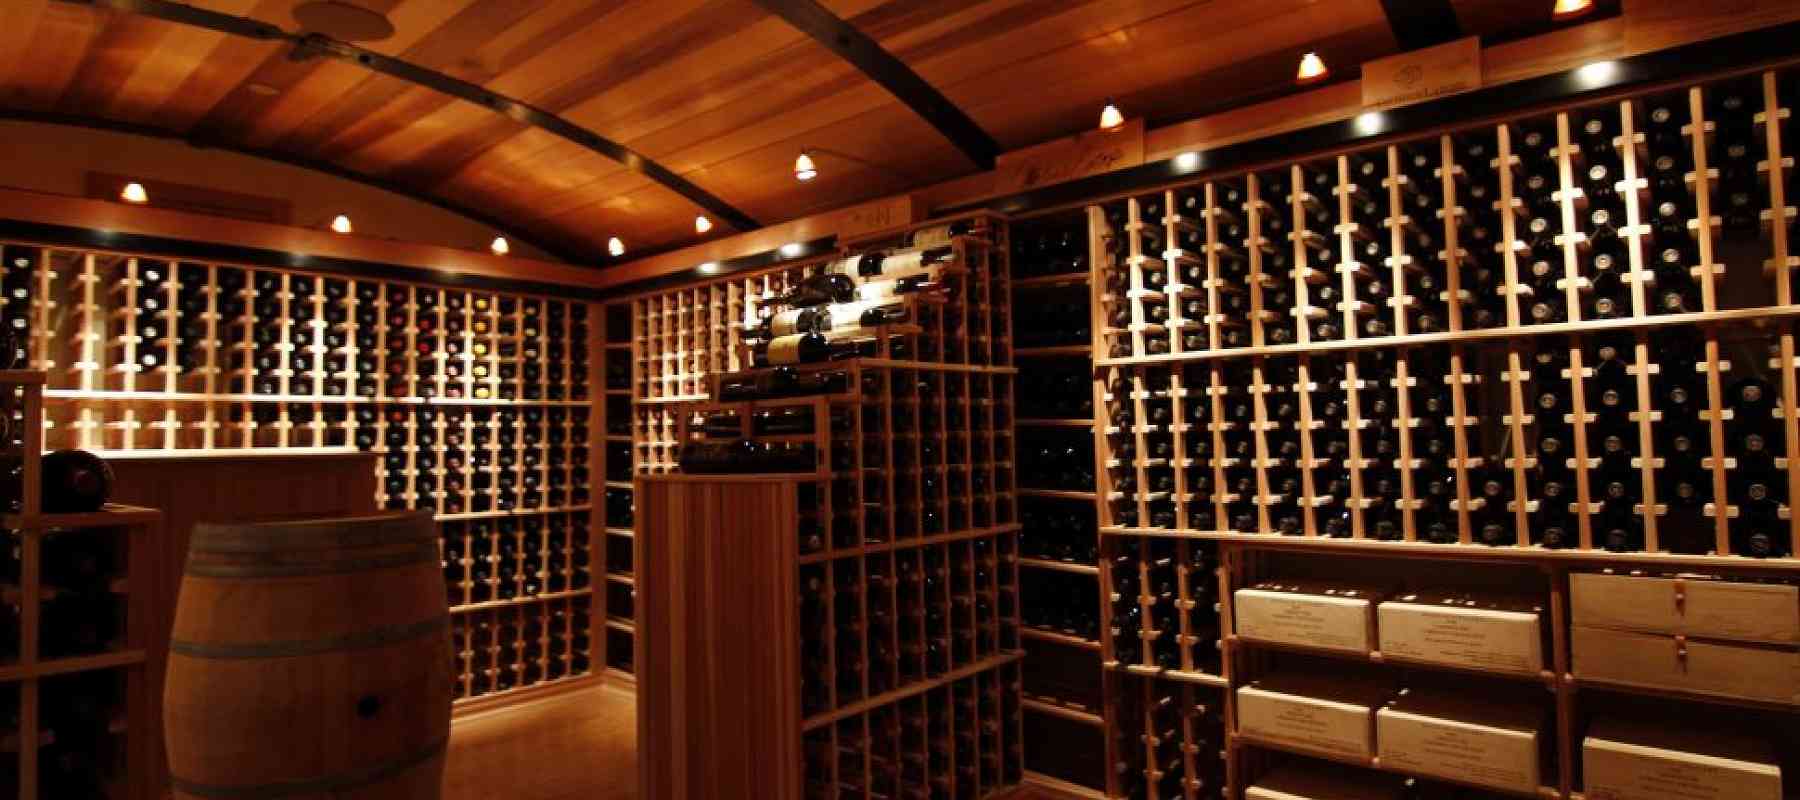 Wine Storage & Cellar ideas